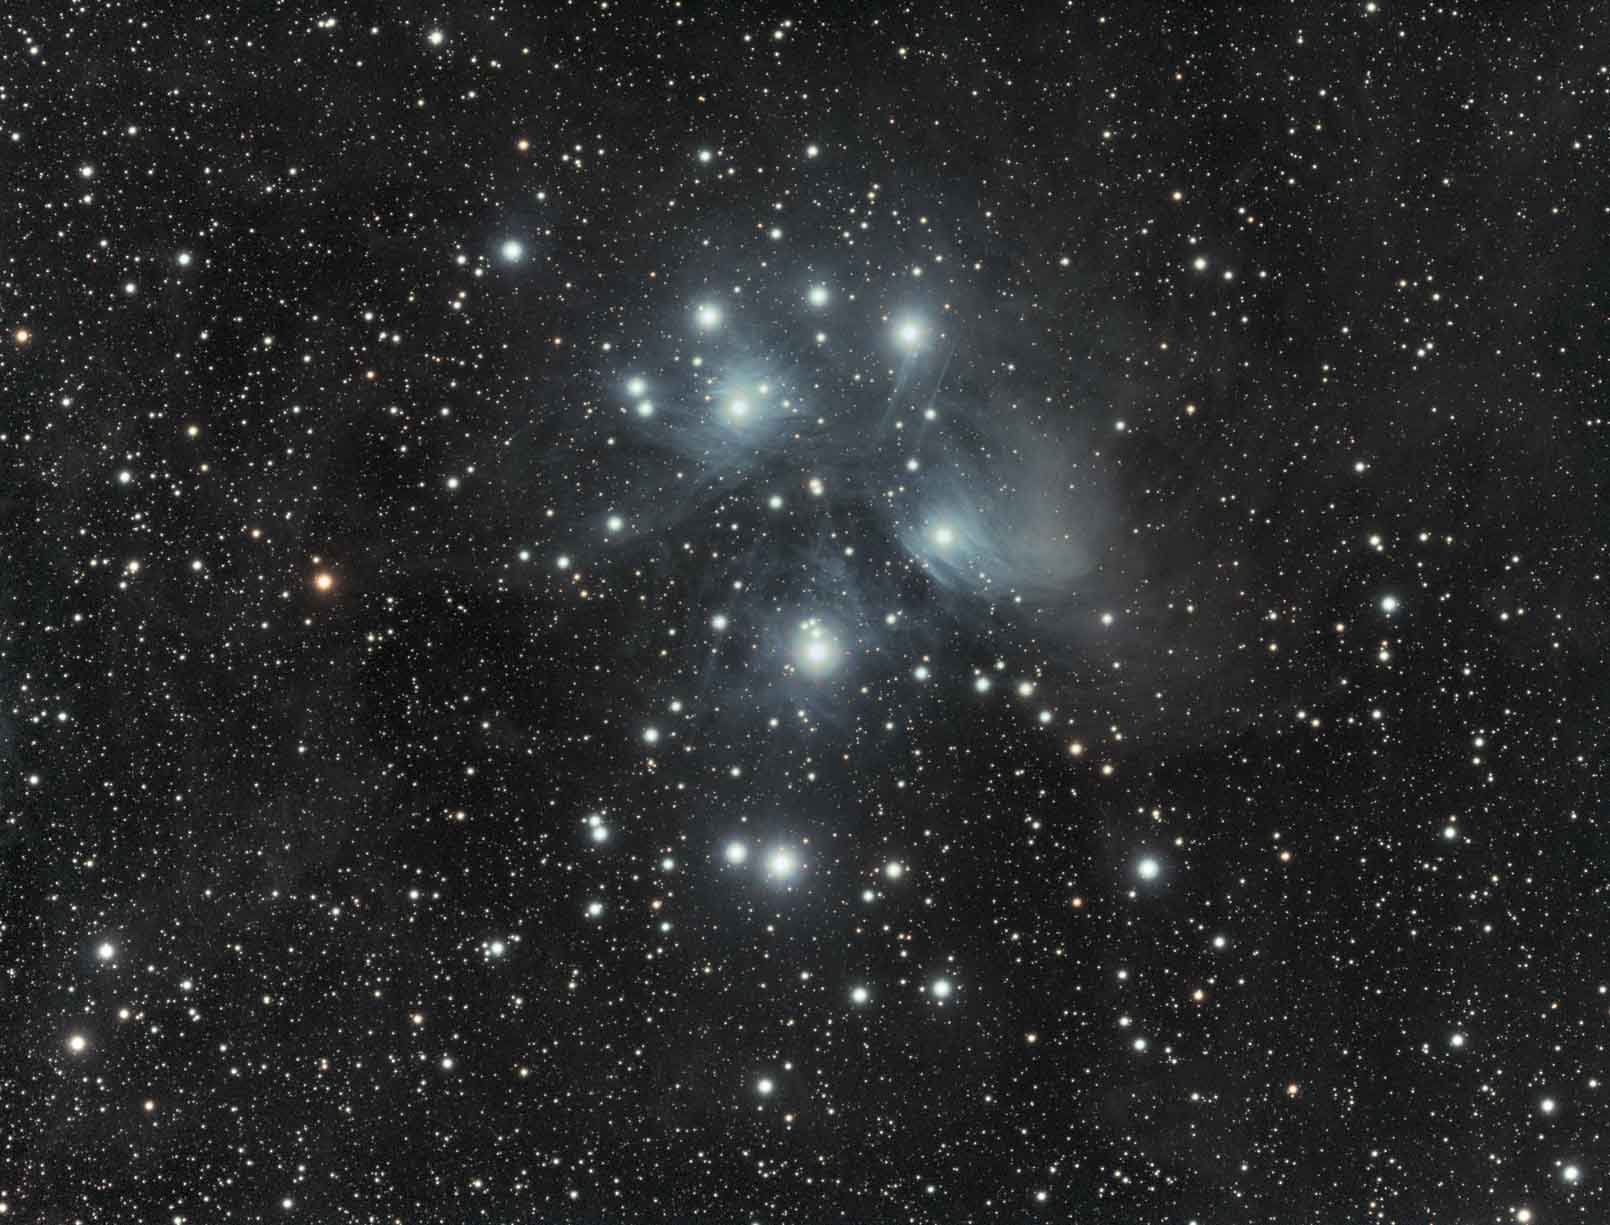 20201221-20201223 Messier 45 - Pleiades